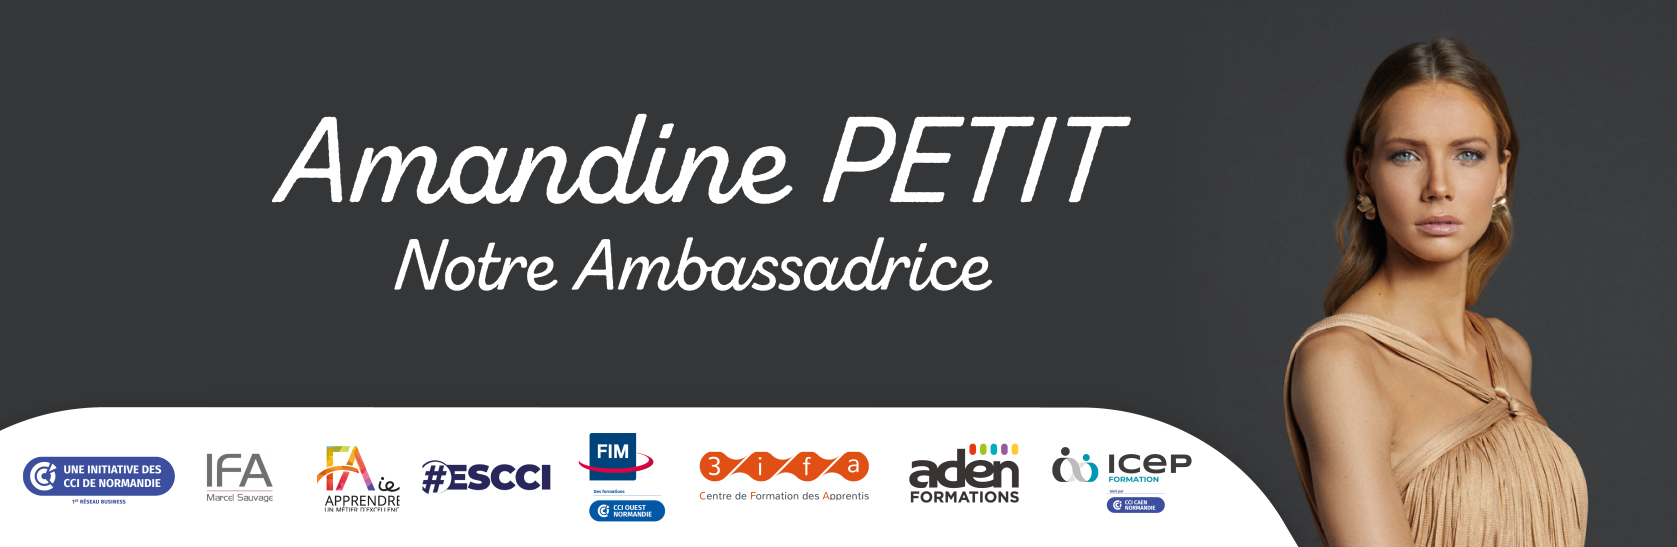 Partenariat avec Amandine Petit